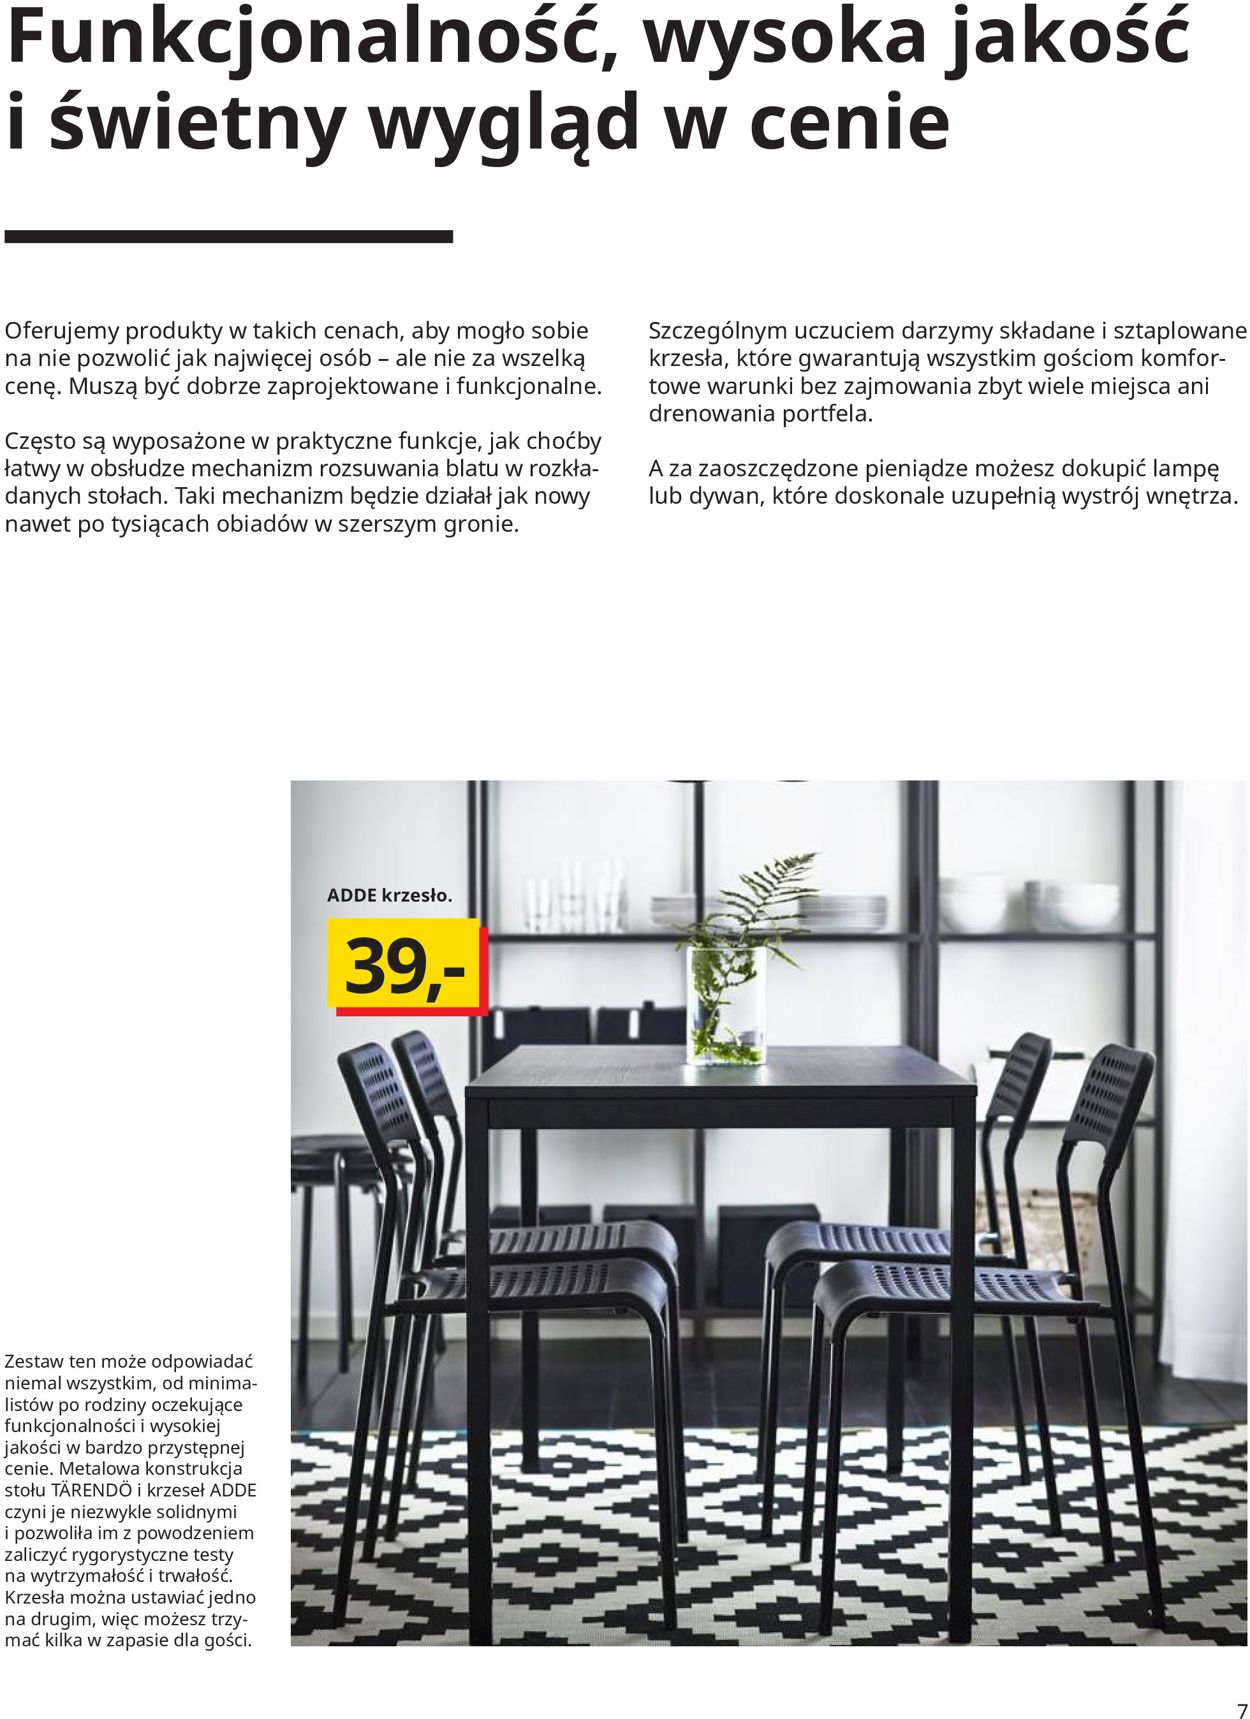 Gazetka promocyjna IKEA - 13.01-31.01.2020 (Strona 7)